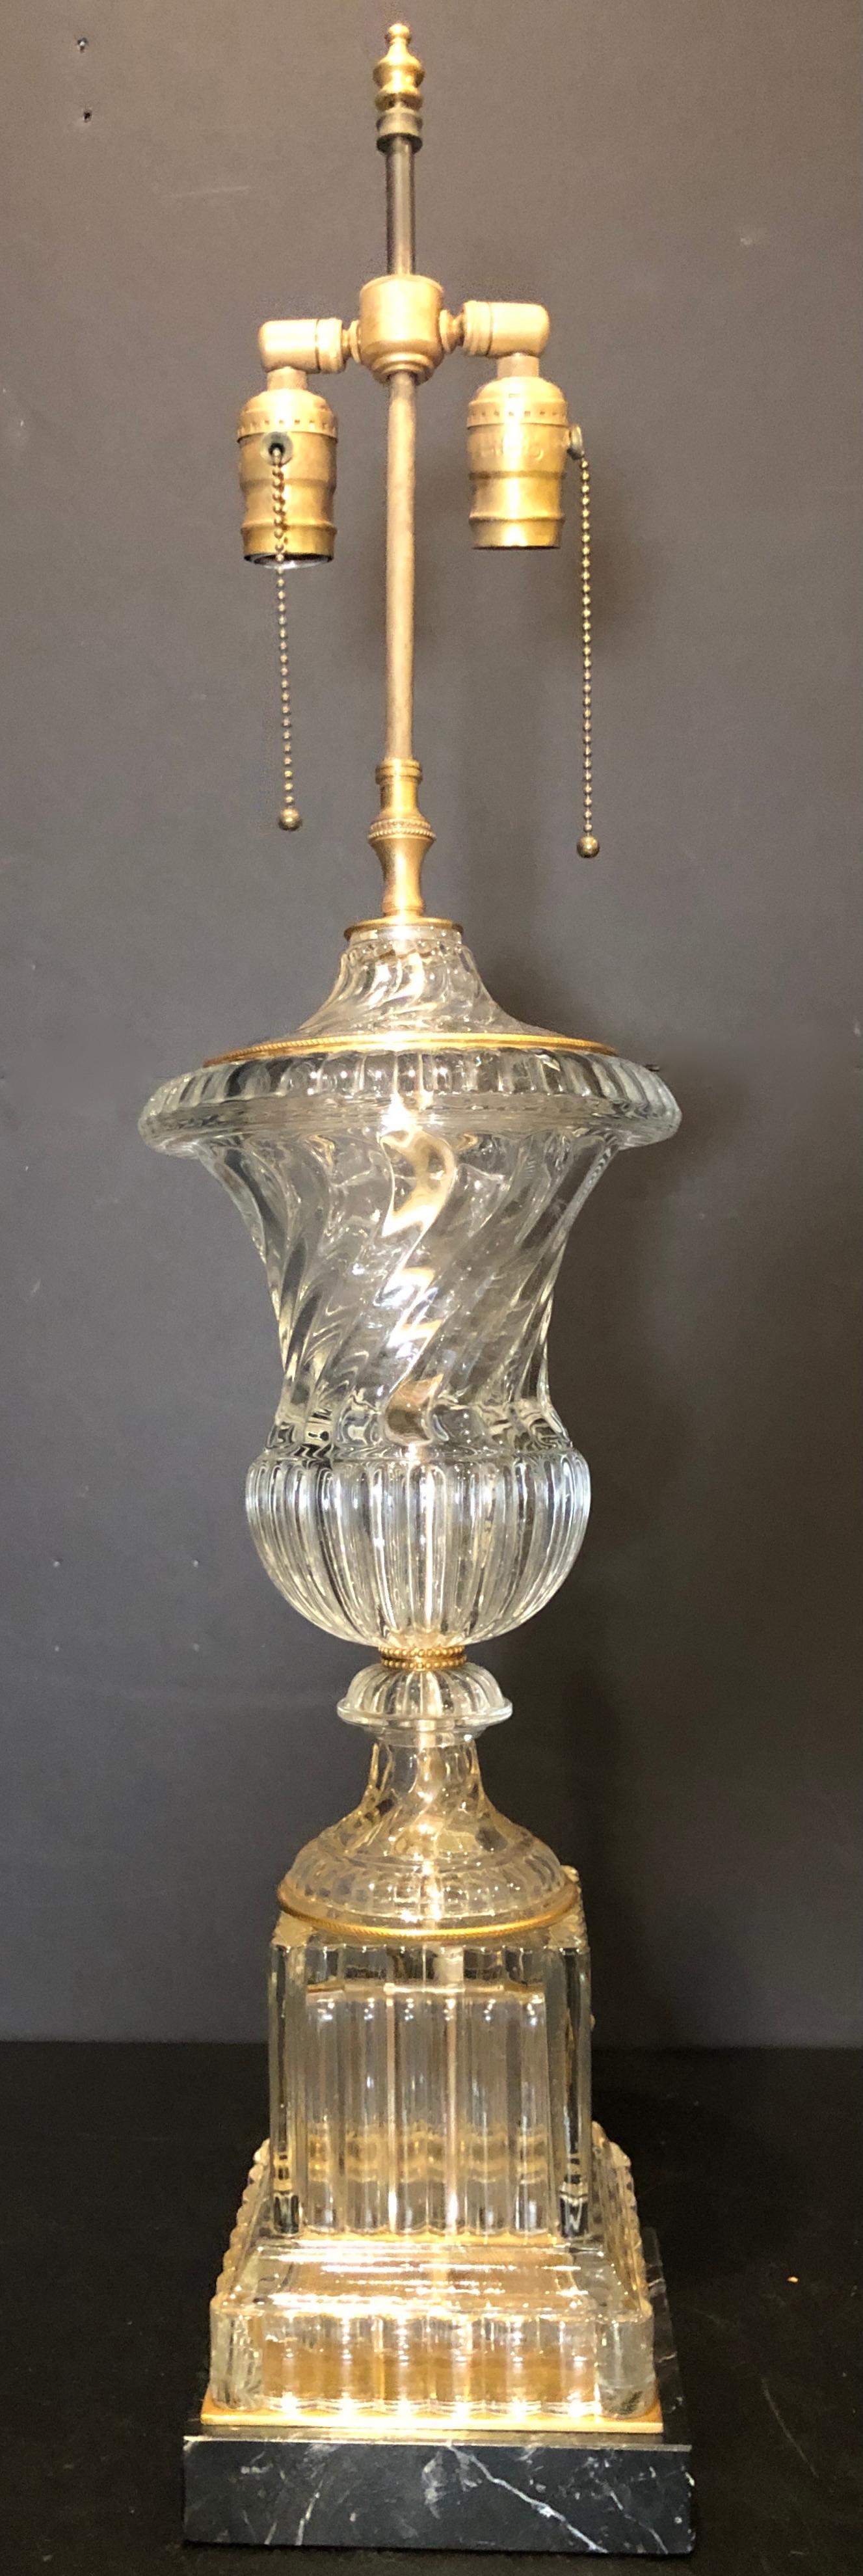 Baccarat Spirale Urne Form Tischlampe. Urnen- oder vasenförmige Lampe im Baccarat-Stil auf quadratischem, schwarz geädertem Marmorsockel mit subtilen Verzierungen aus vergoldeter Bronze, von Paul Hanson Lighting Co. 
Basis ist 6